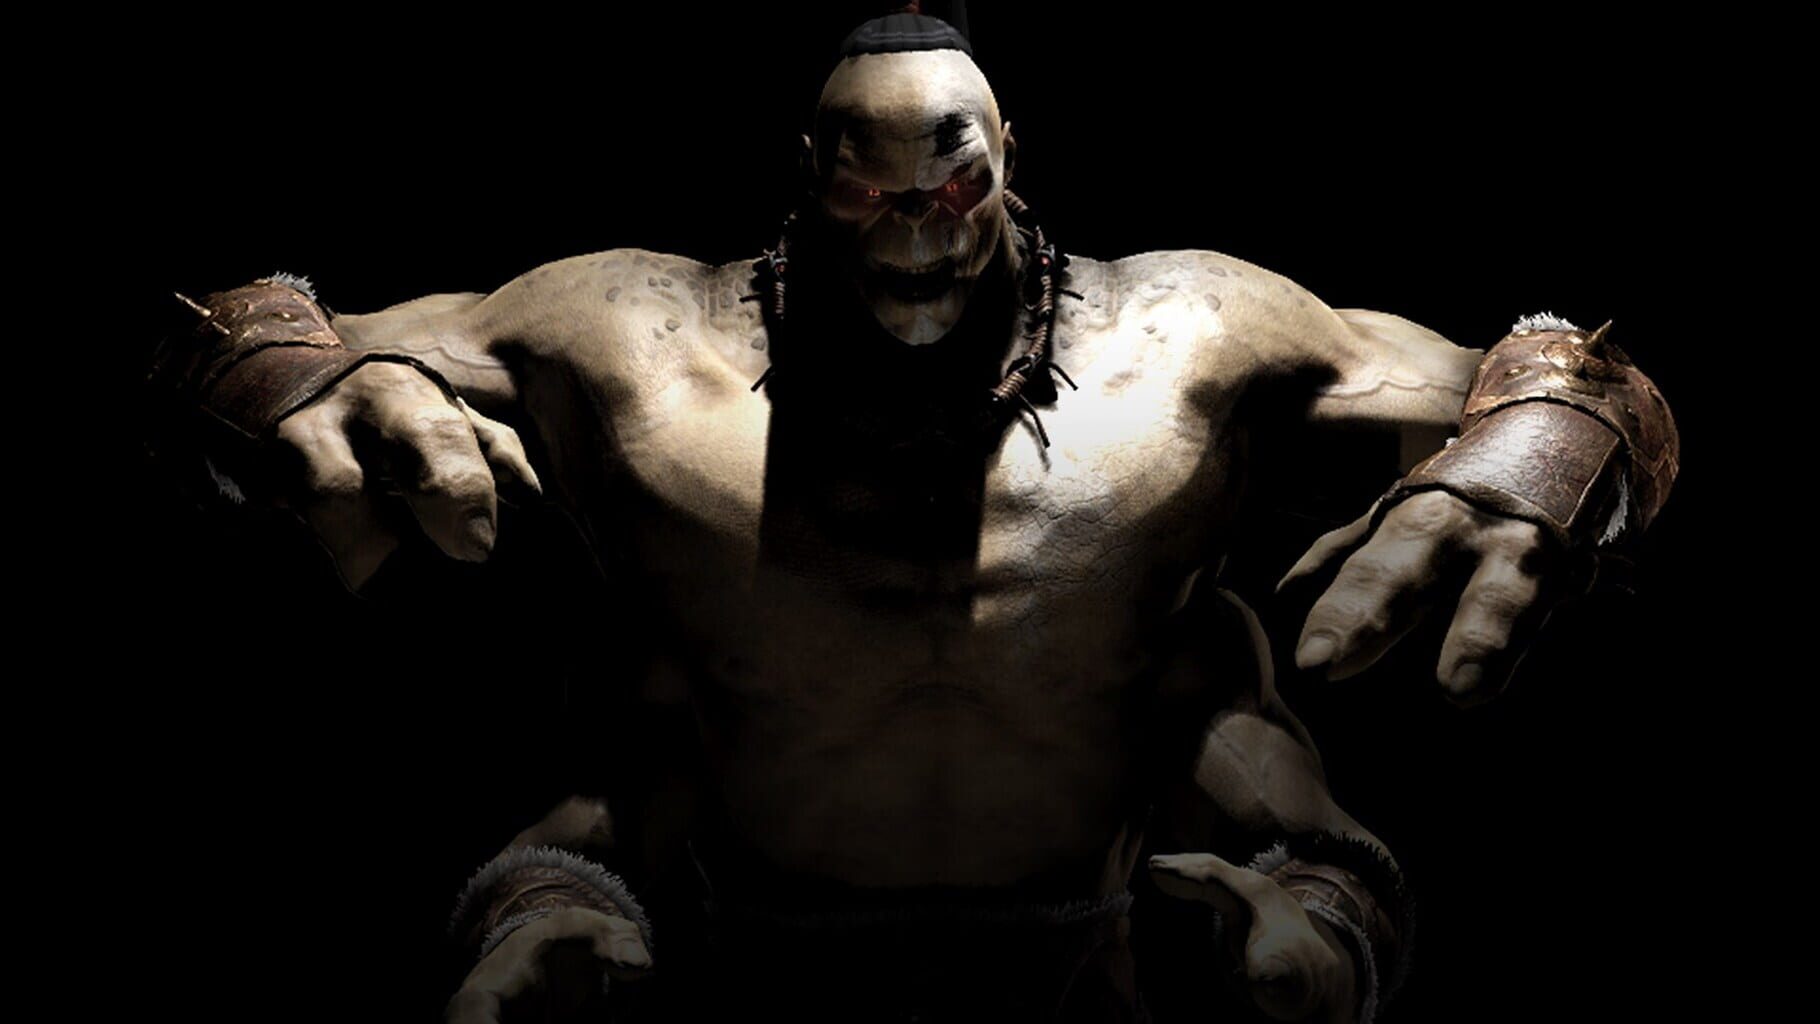 Arte - Mortal Kombat X: Goro